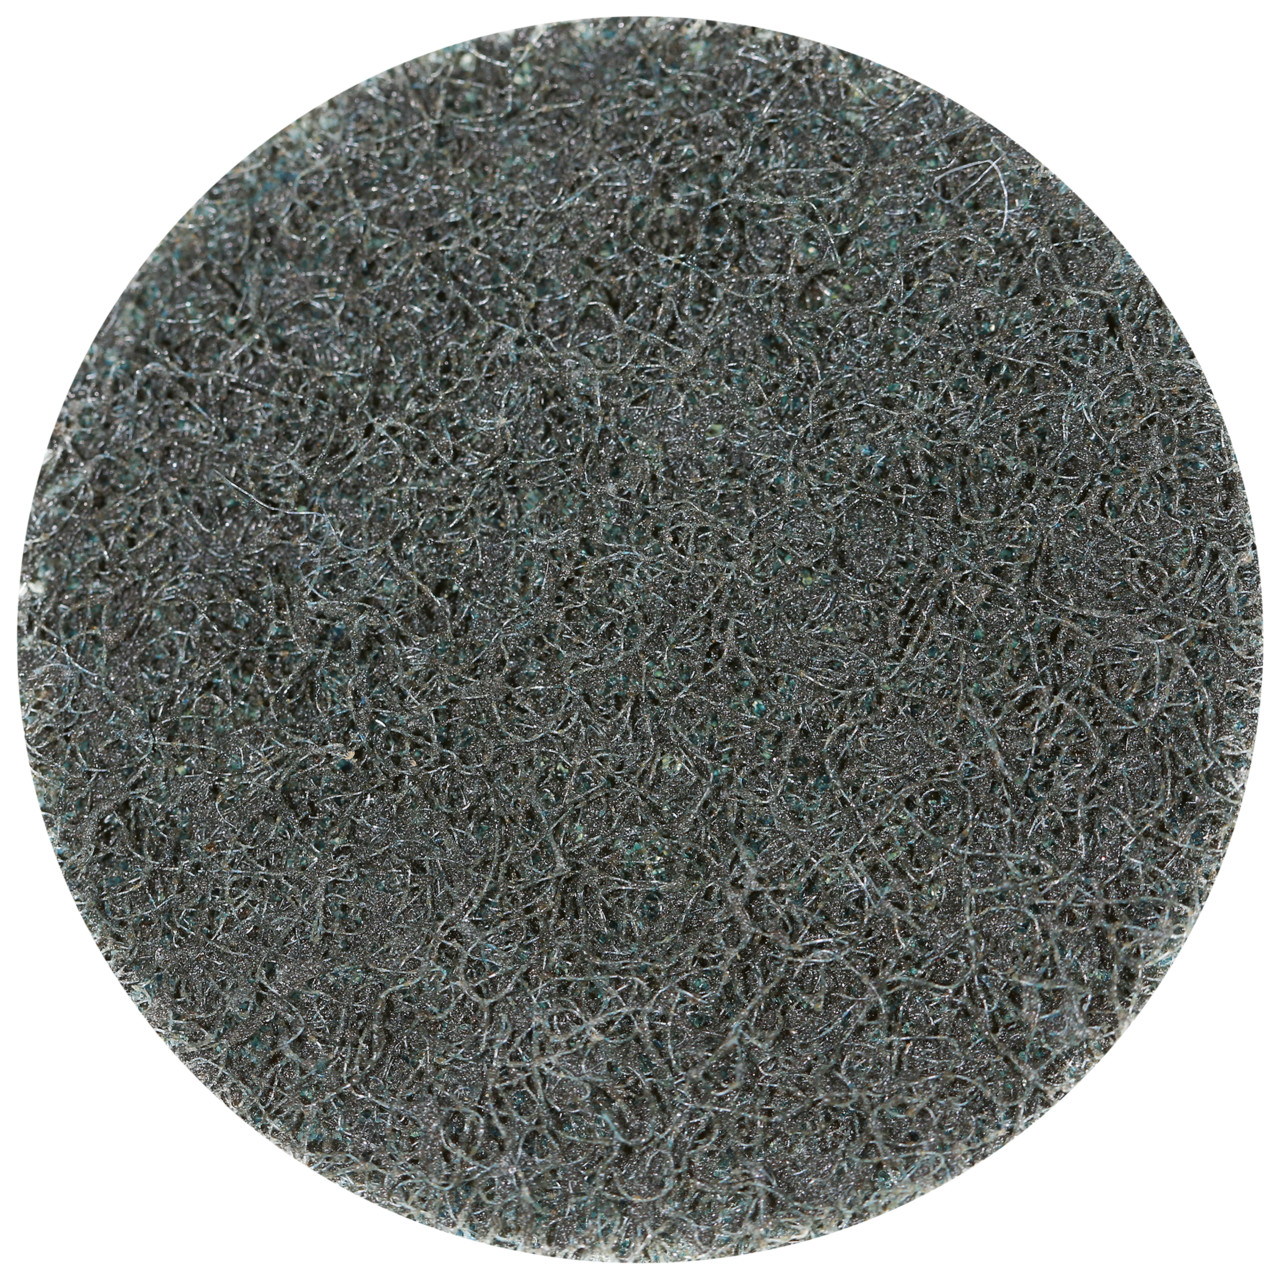 Tyrolit SCM QUICK CHANGE DISC Dimensione 50xR Per acciaio, acciaio inox, metalli non ferrosi, plastica e legno, GROB, forma: QDISC, Art. 112543